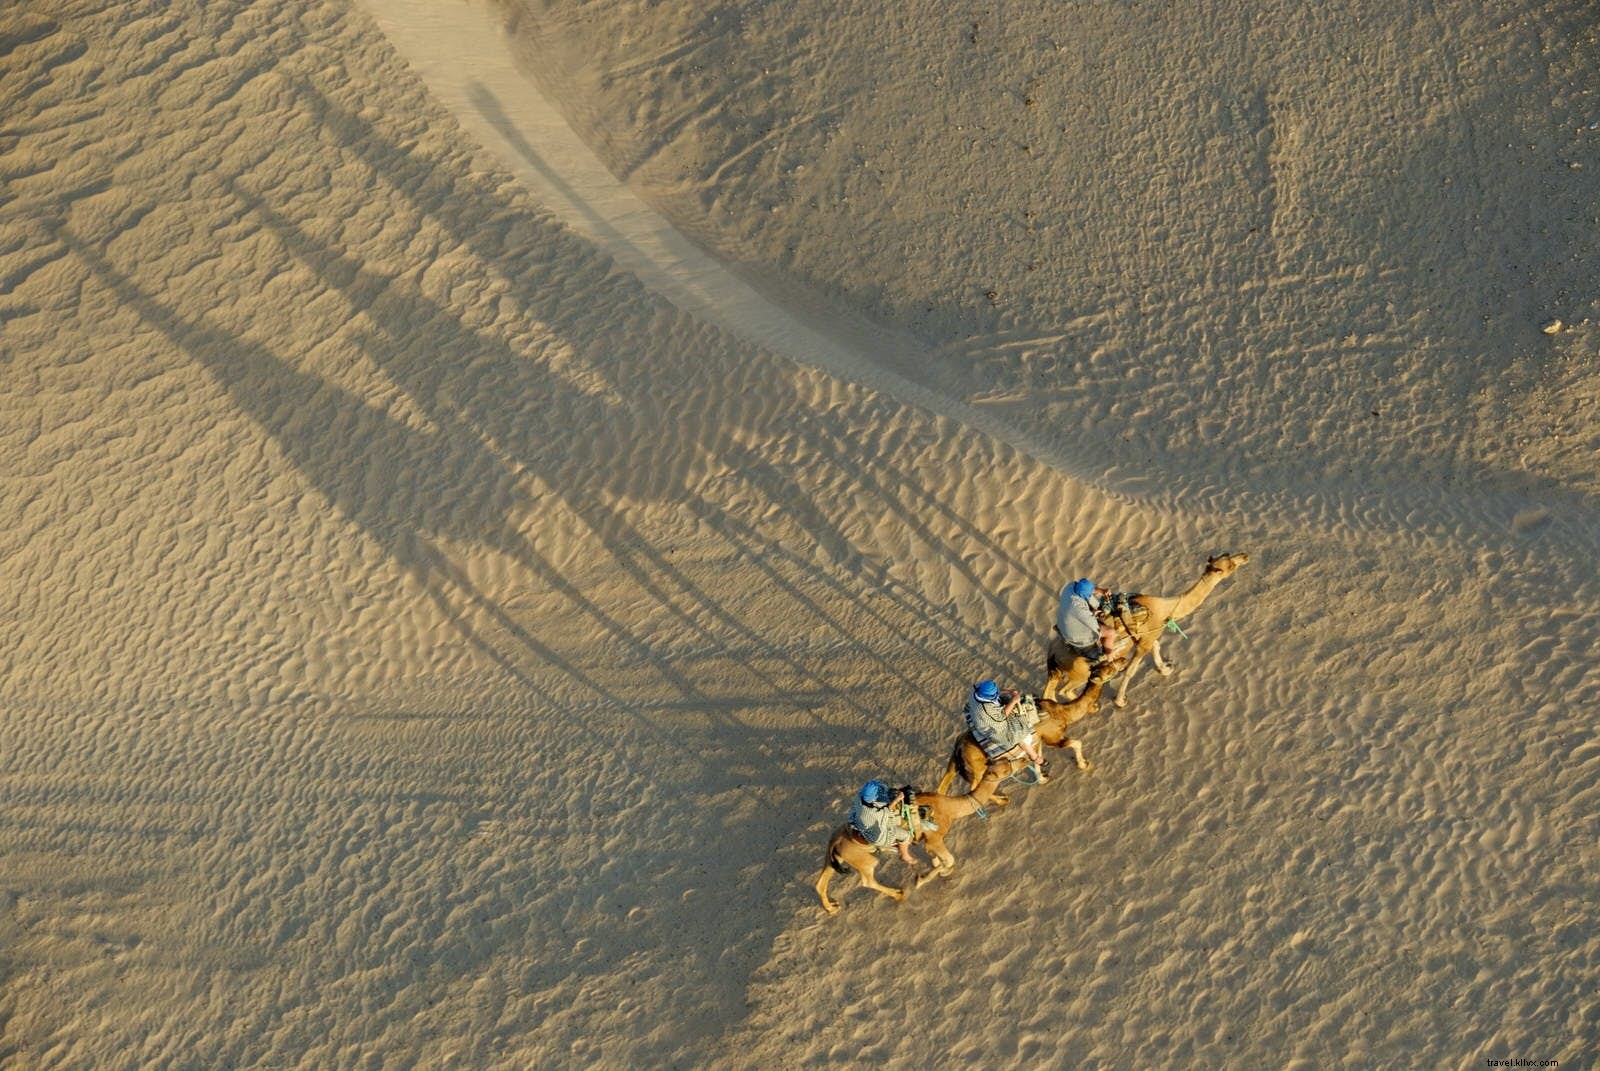 Odyssée du désert :préparer son voyage au Sahara tunisien 